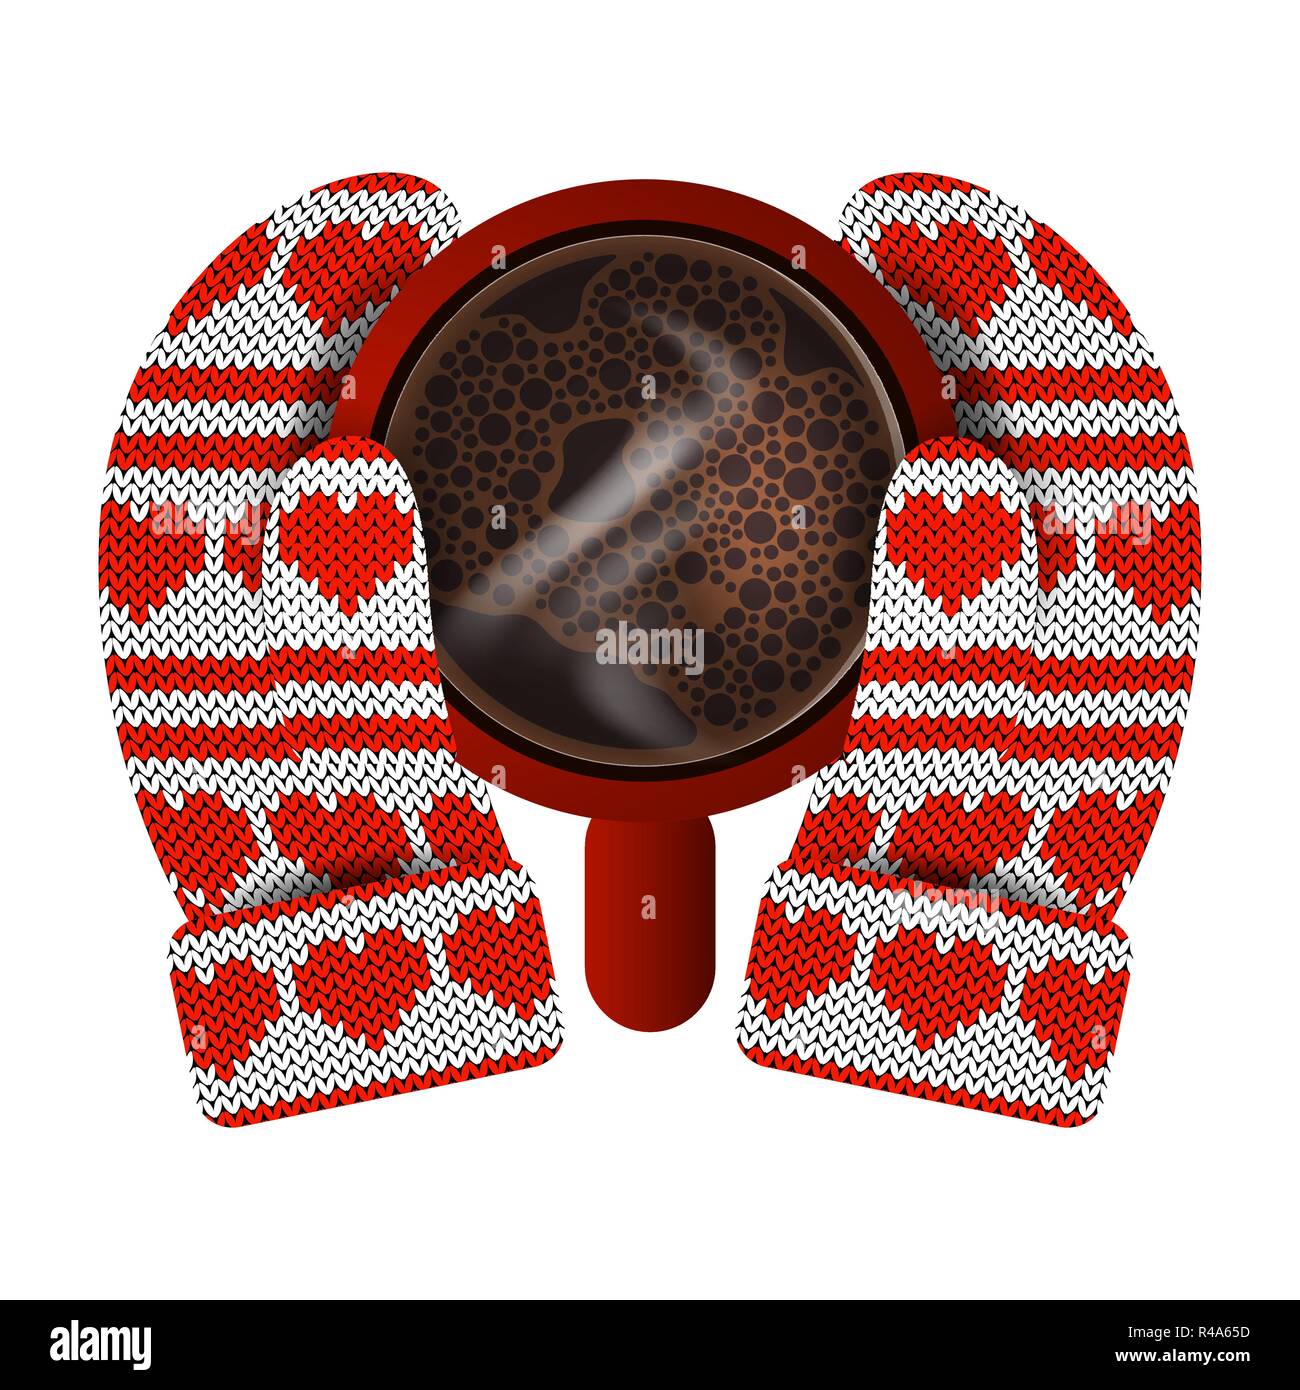 Valentines Day. Dans les mains des mitaines tricotées tenir une tasse rouge avec du café chaud. Modèle de tricot de coeurs et de rayures. Rouge et Blanc Illustration de Vecteur